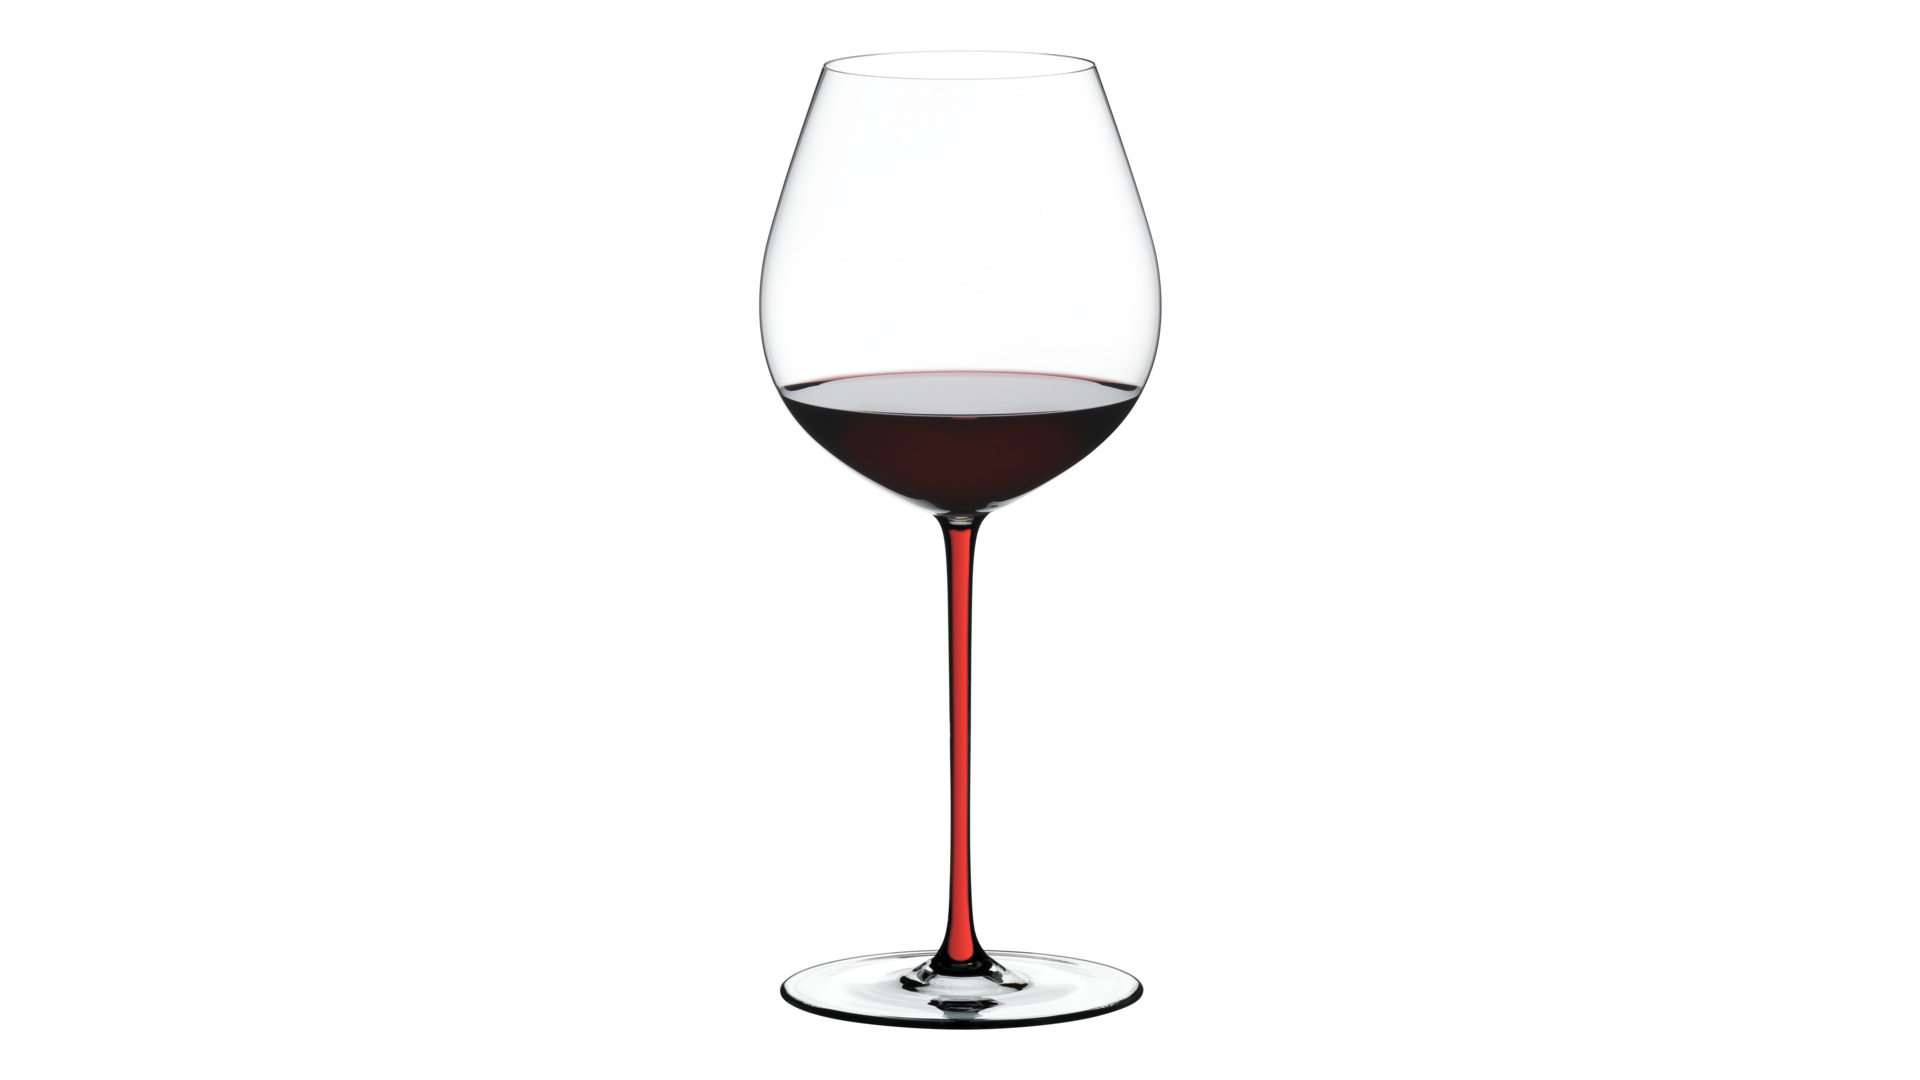 Бокал для красного вина Riedel Fatto a Mano Pinot Noir 705мл,красная ножка, ручная работа, хрусталь